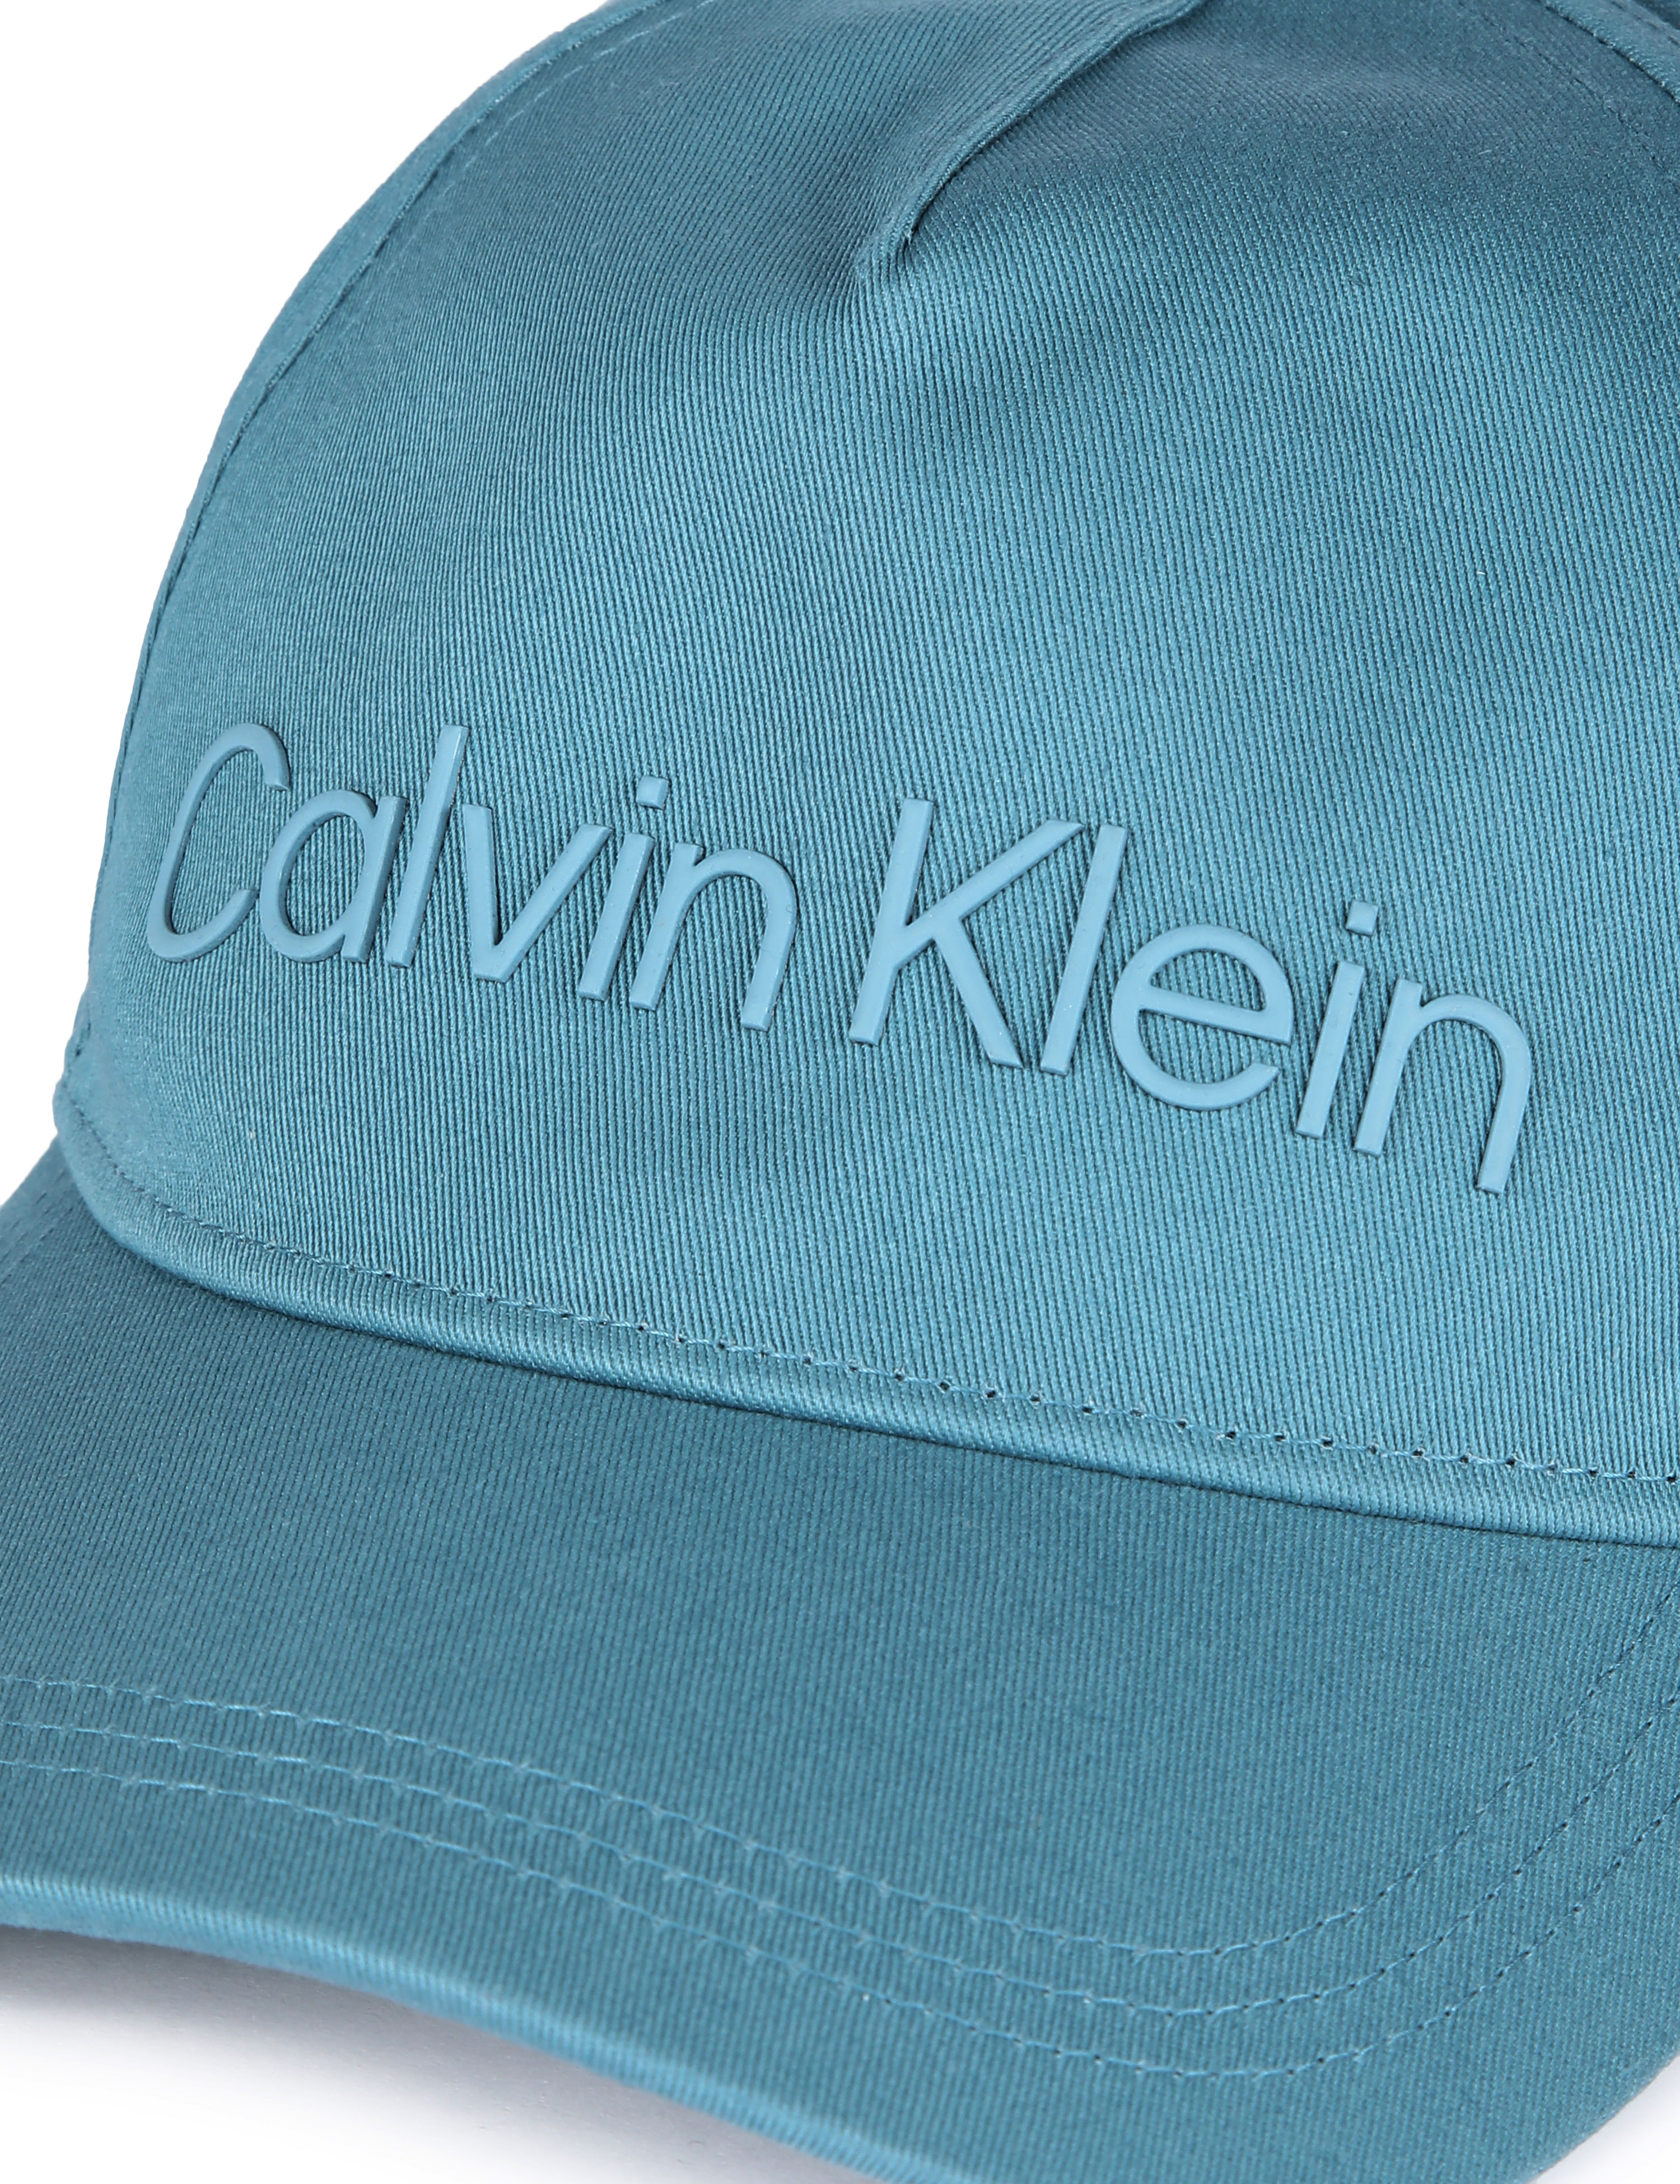 Buy Calvin Cap Blue Baseball Technical Men Cotton Logo Klein Organic Jeans